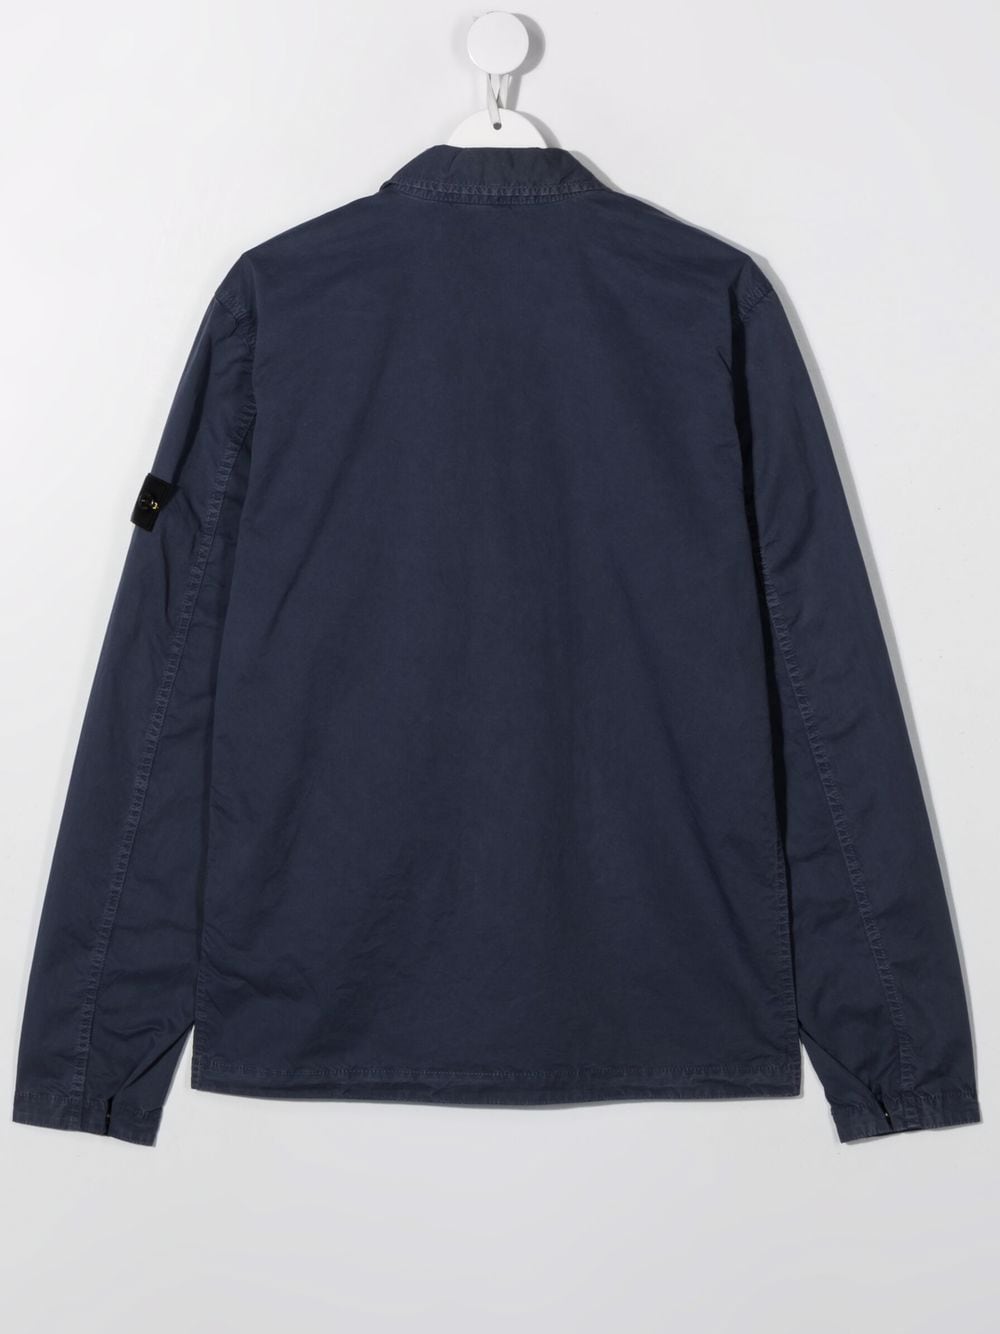 STONE ISLAND KIDS Logo sleeve-patch shirt jacket Navy - MAISONDEFASHION.COM